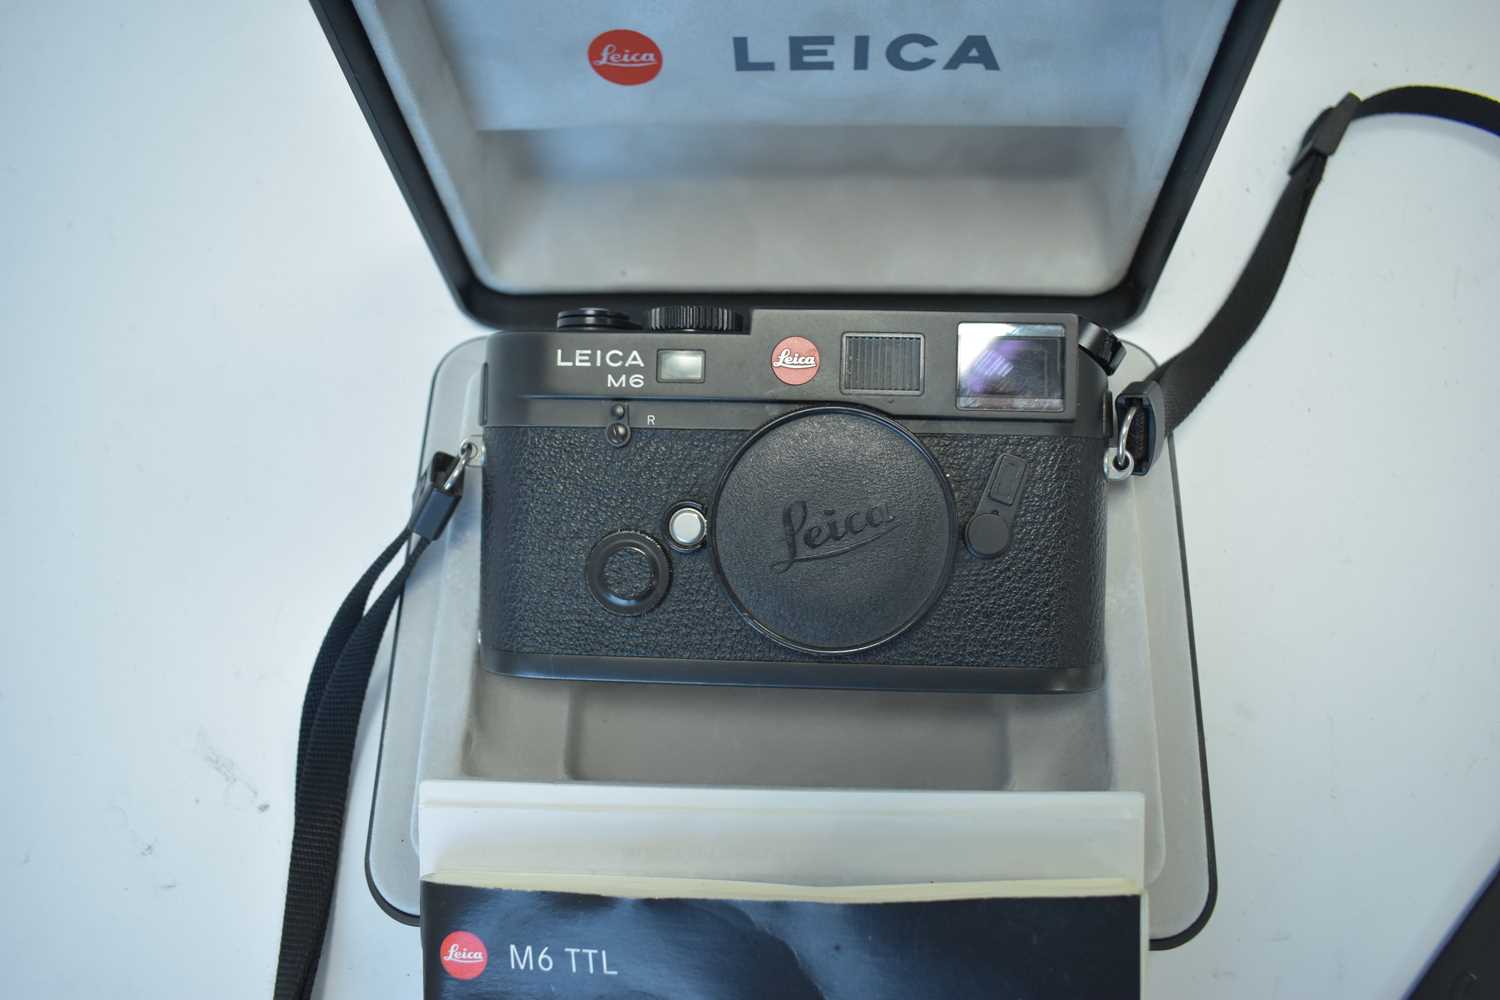 825 - A Leica M6 camera.